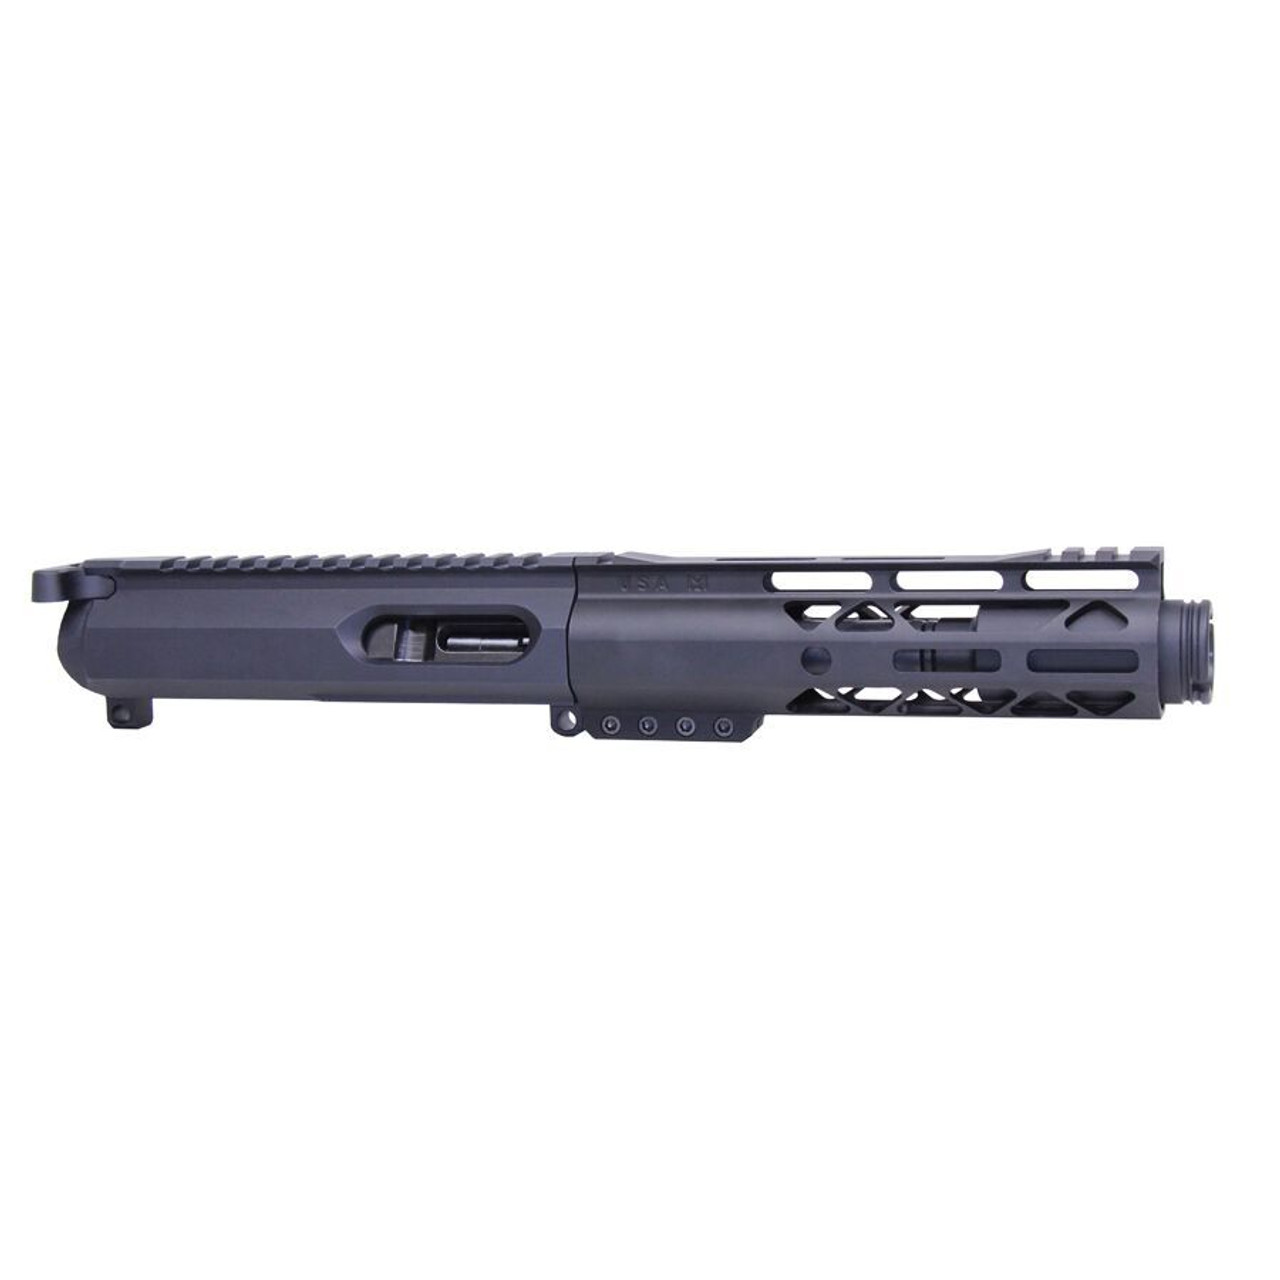 Guntec USA 9MM-KIT-2 AR-15 9mm Cal Complete Upper Kit (Gen 2) (AIR-LOK Handguard)